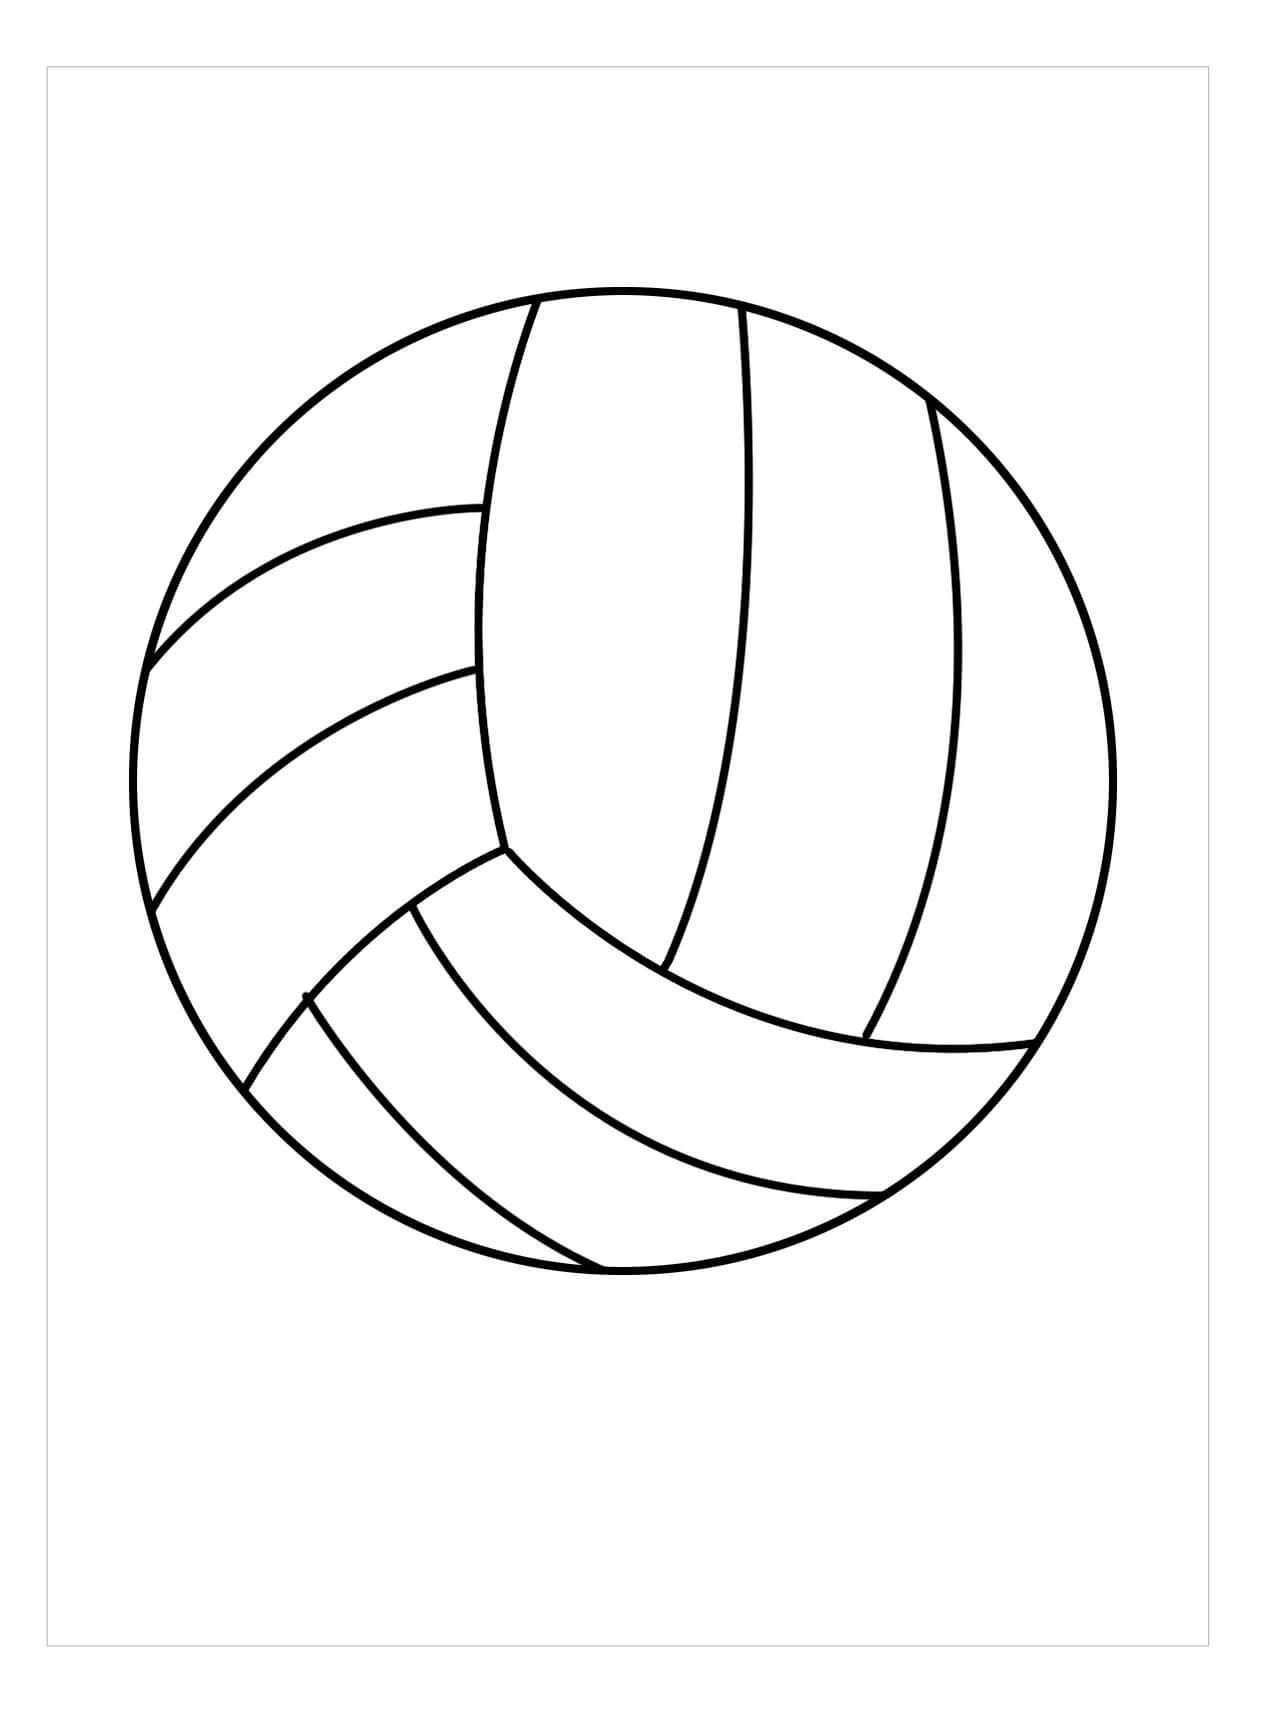 Bola de Voleibol Perfeita para colorir